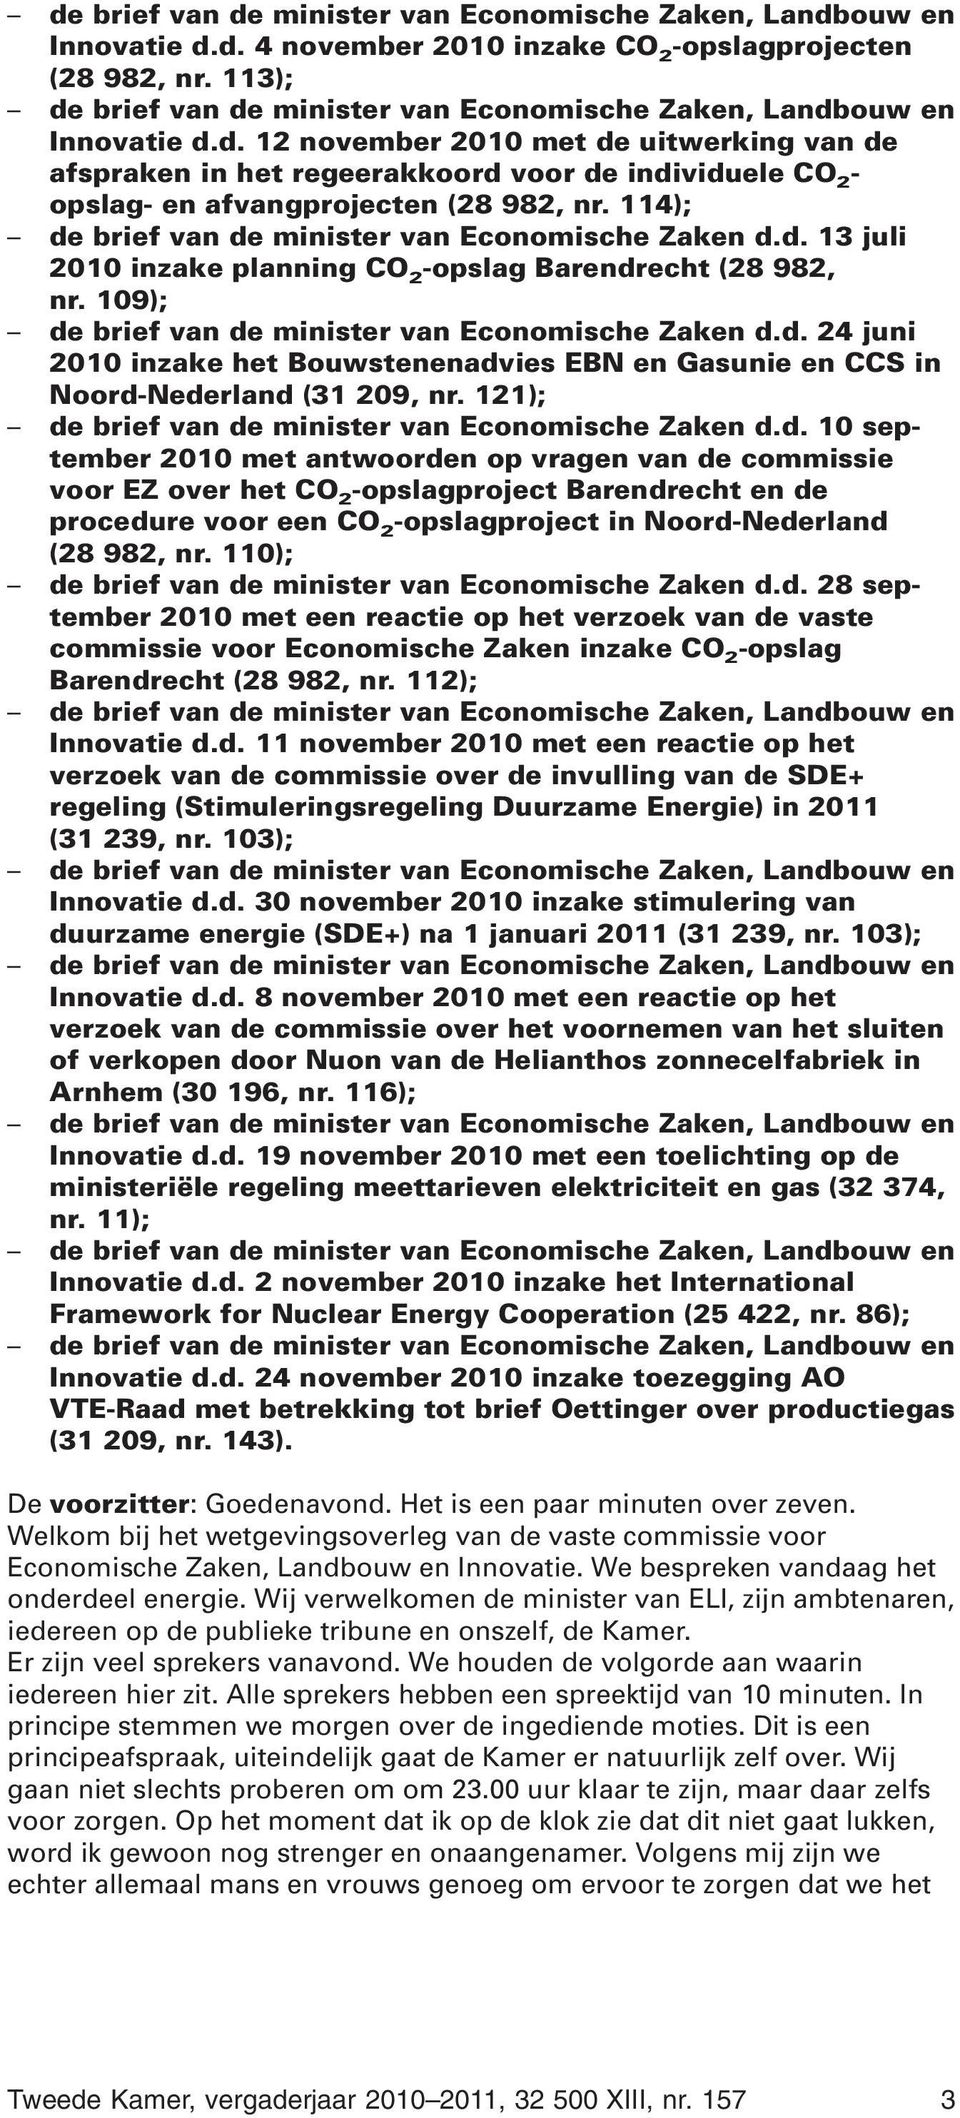 114); de brief van de minister van Economische Zaken d.d. 13 juli 2010 inzake planning CO 2 -opslag Barendrecht (28 982, nr. 109); de brief van de minister van Economische Zaken d.d. 24 juni 2010 inzake het Bouwstenenadvies EBN en Gasunie en CCS in Noord-Nederland (31 209, nr.